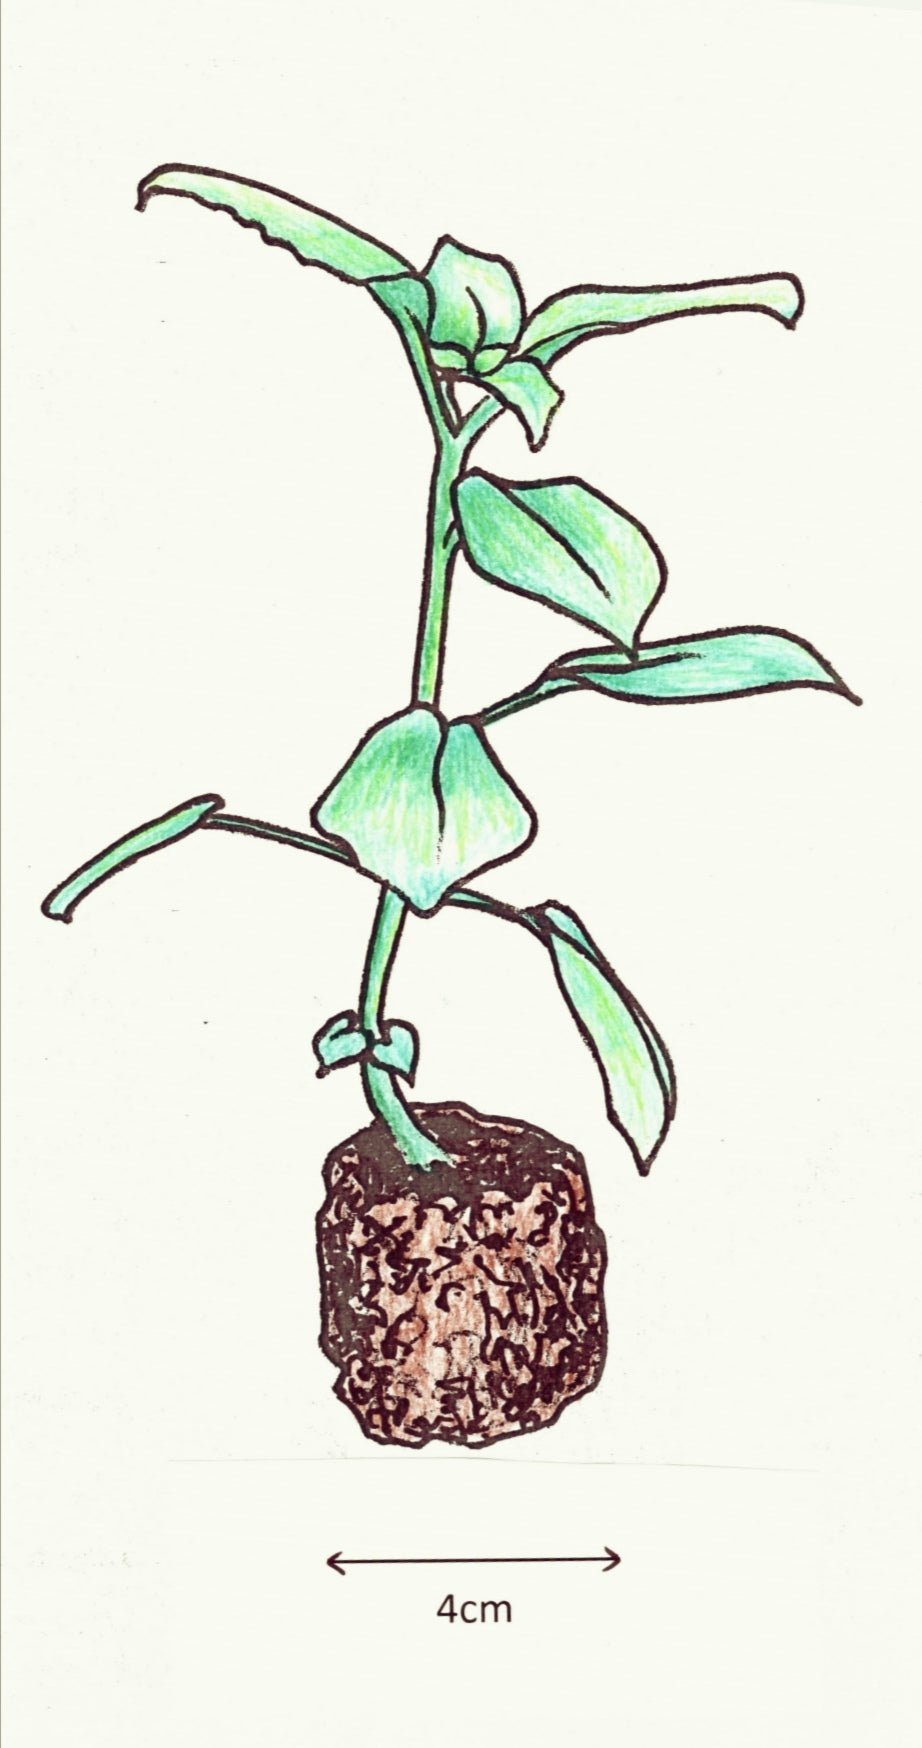 Streptocarpus caulescens pallescens